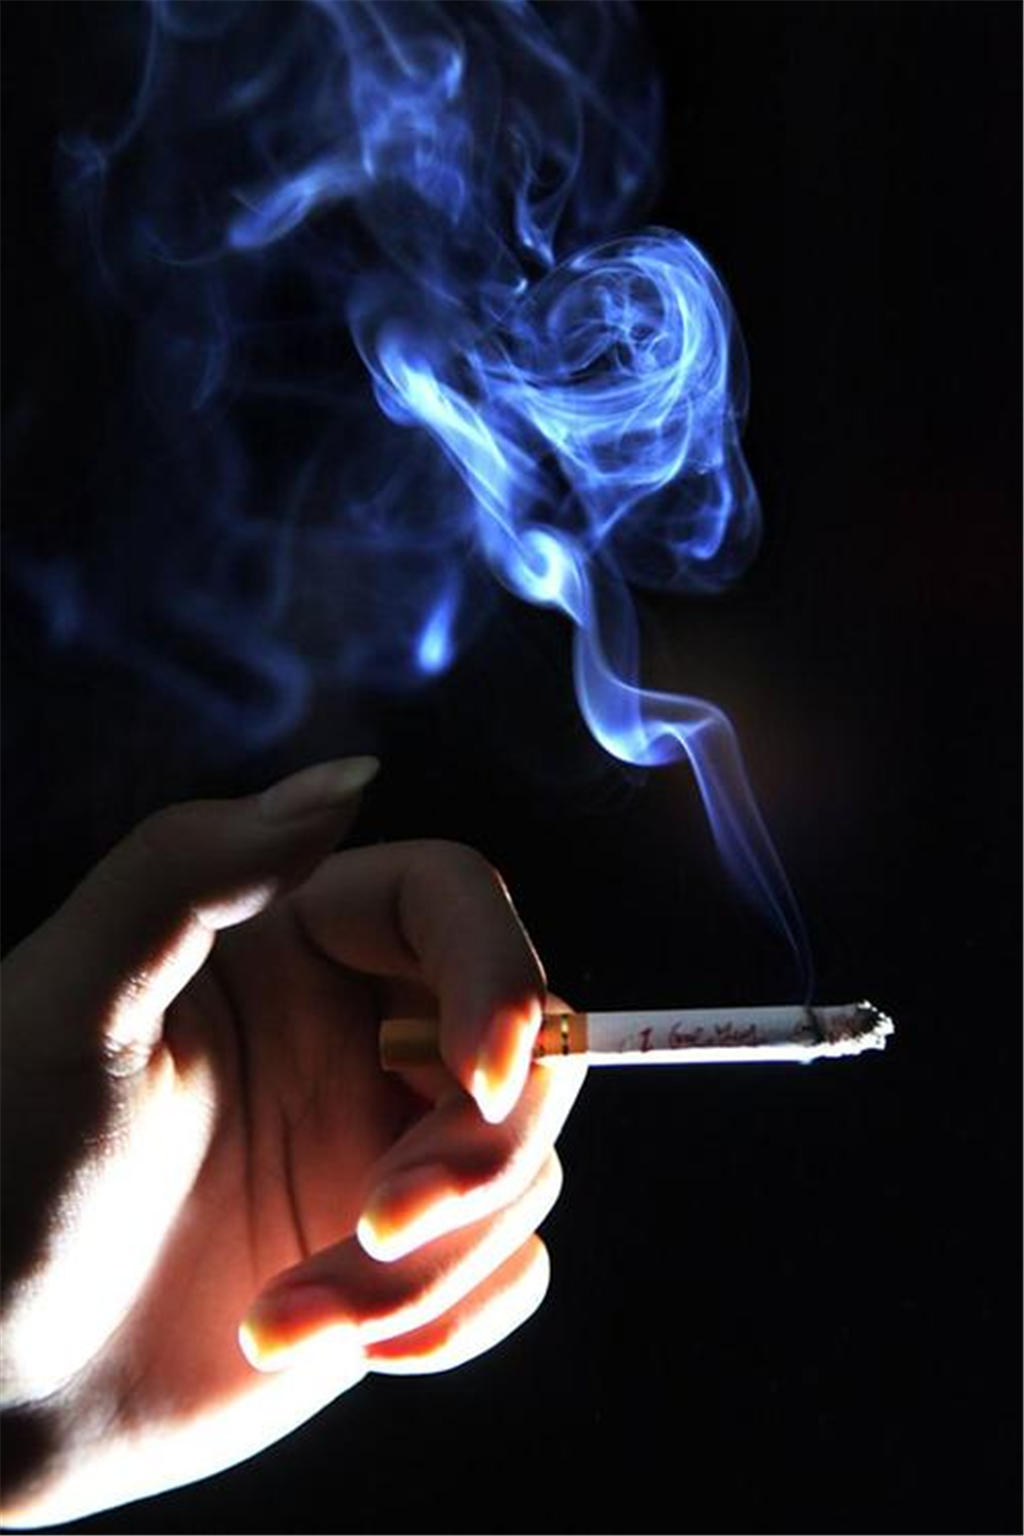 世界无烟日单手拿烟香烟禁止高清摄影大图-千库网